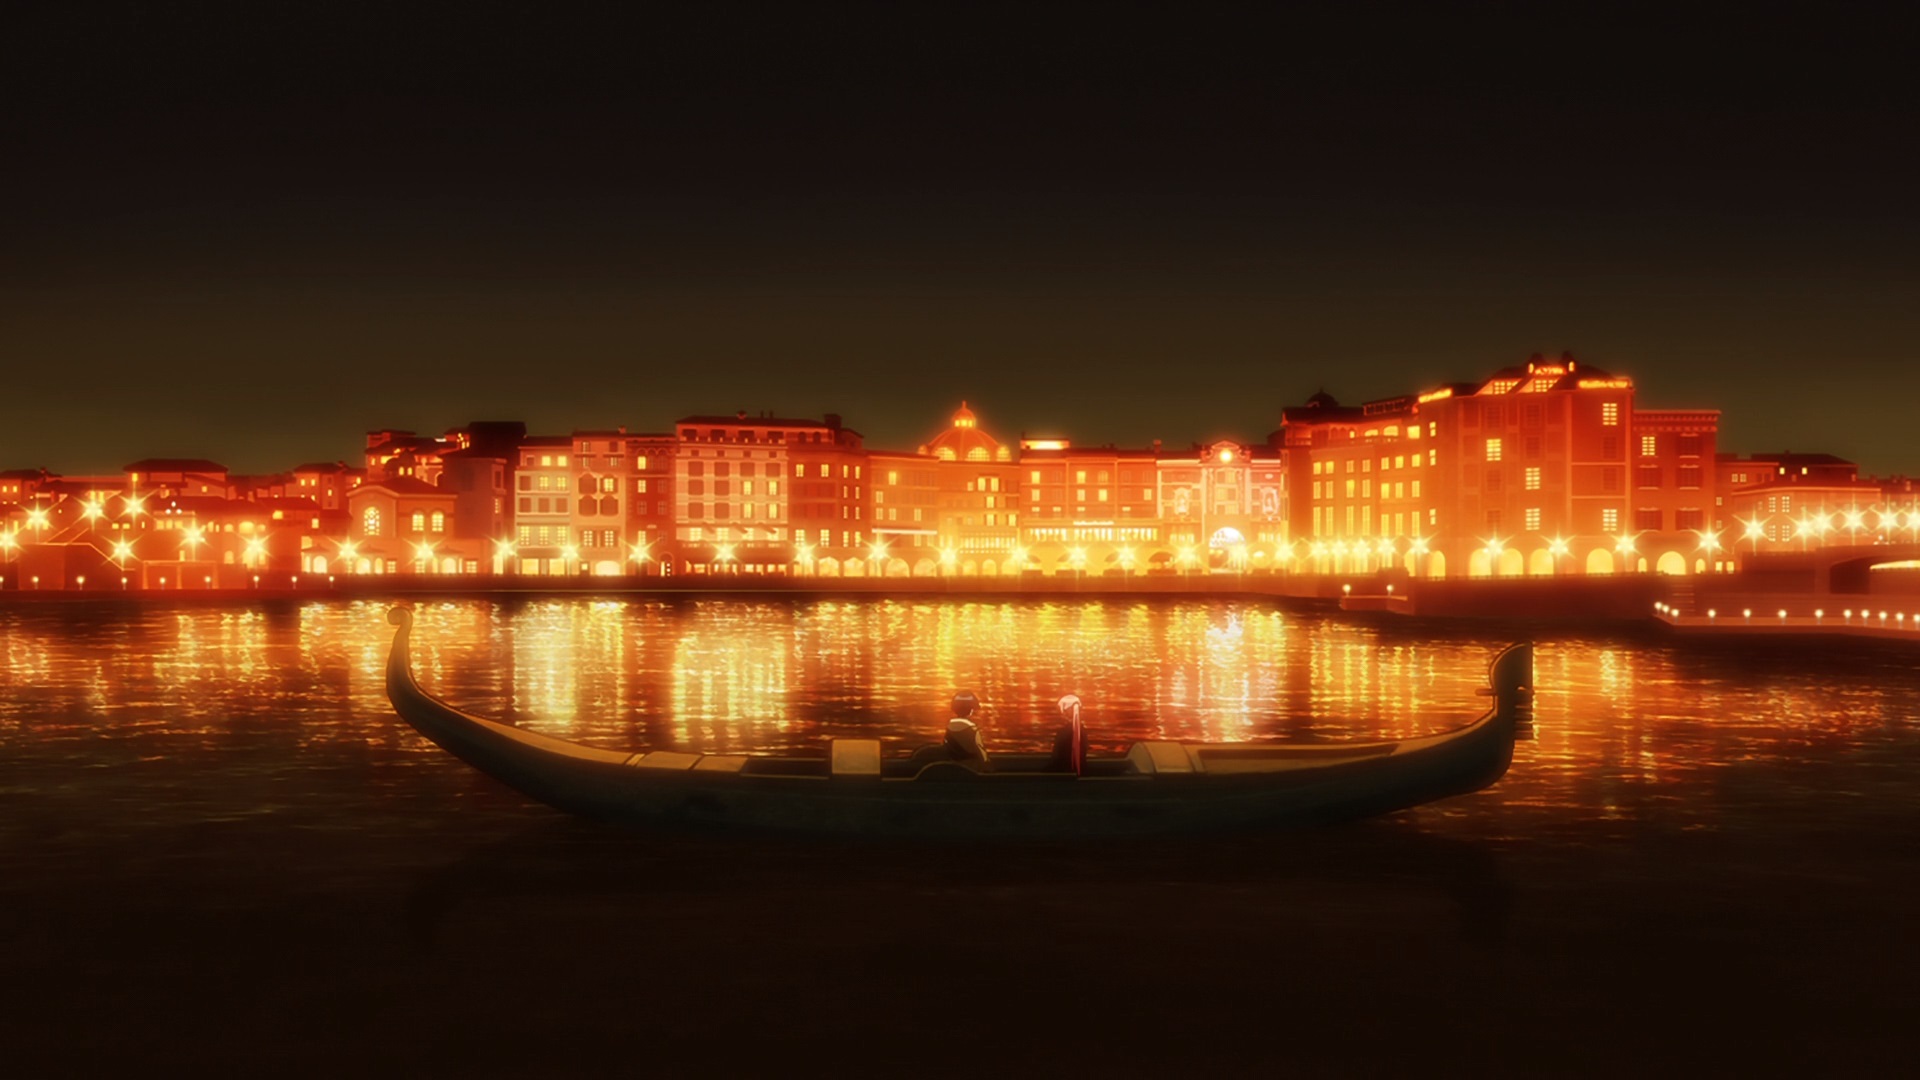 Captura de tela do episódio 12 de "Shikimori's not just a cutie", mostrando um cenário noturno